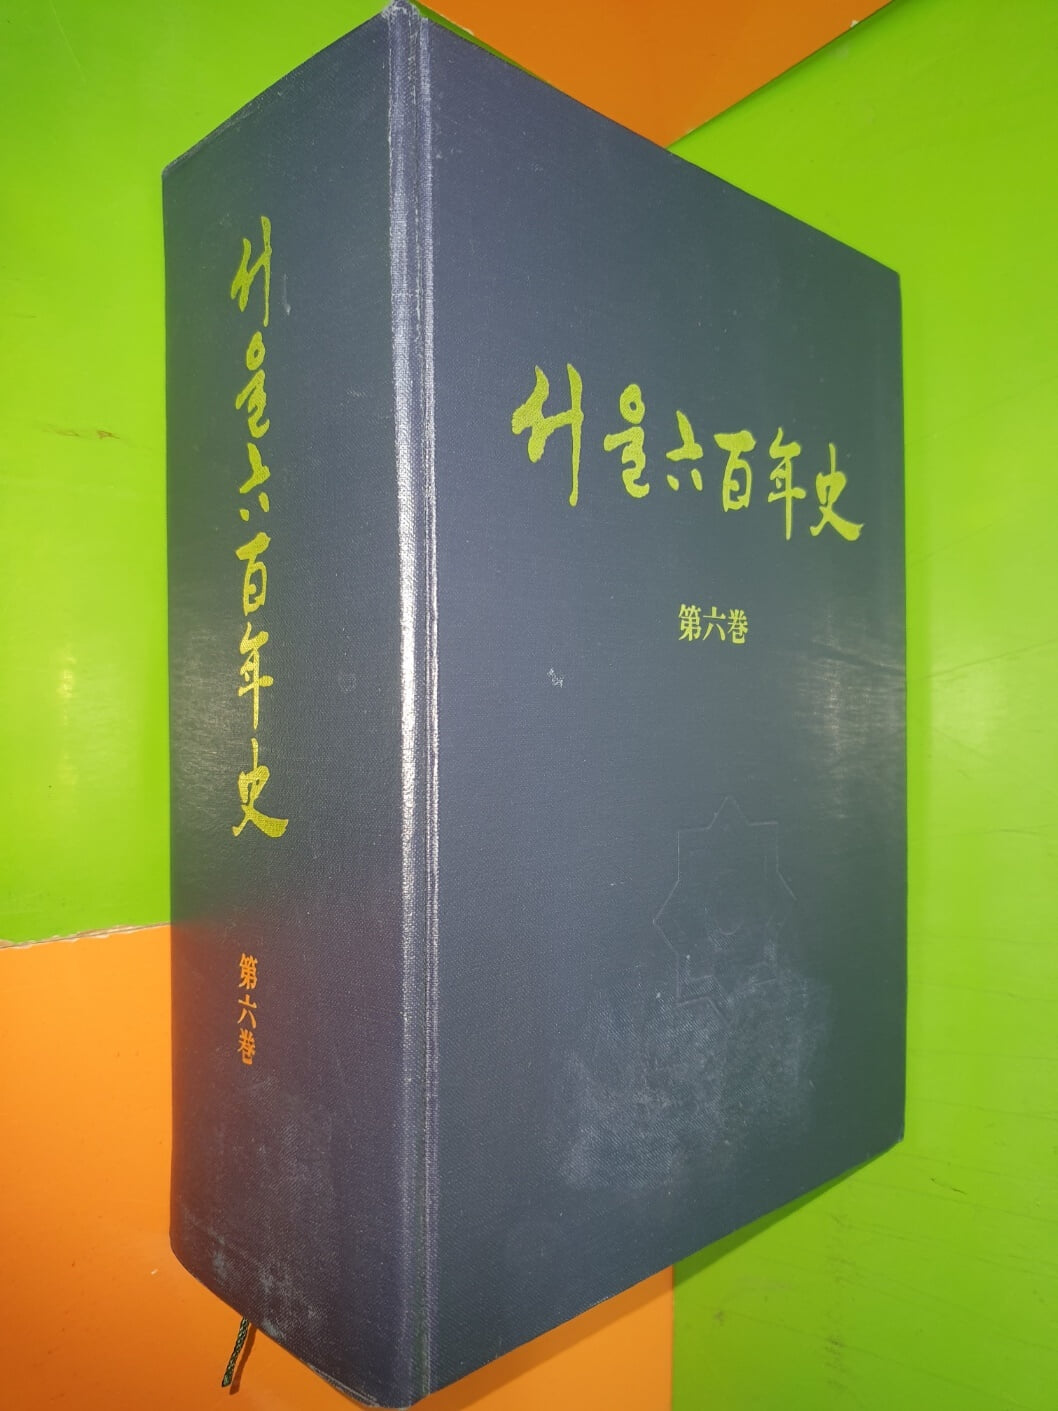 서울 육백년사 제6권 (1961~1979)